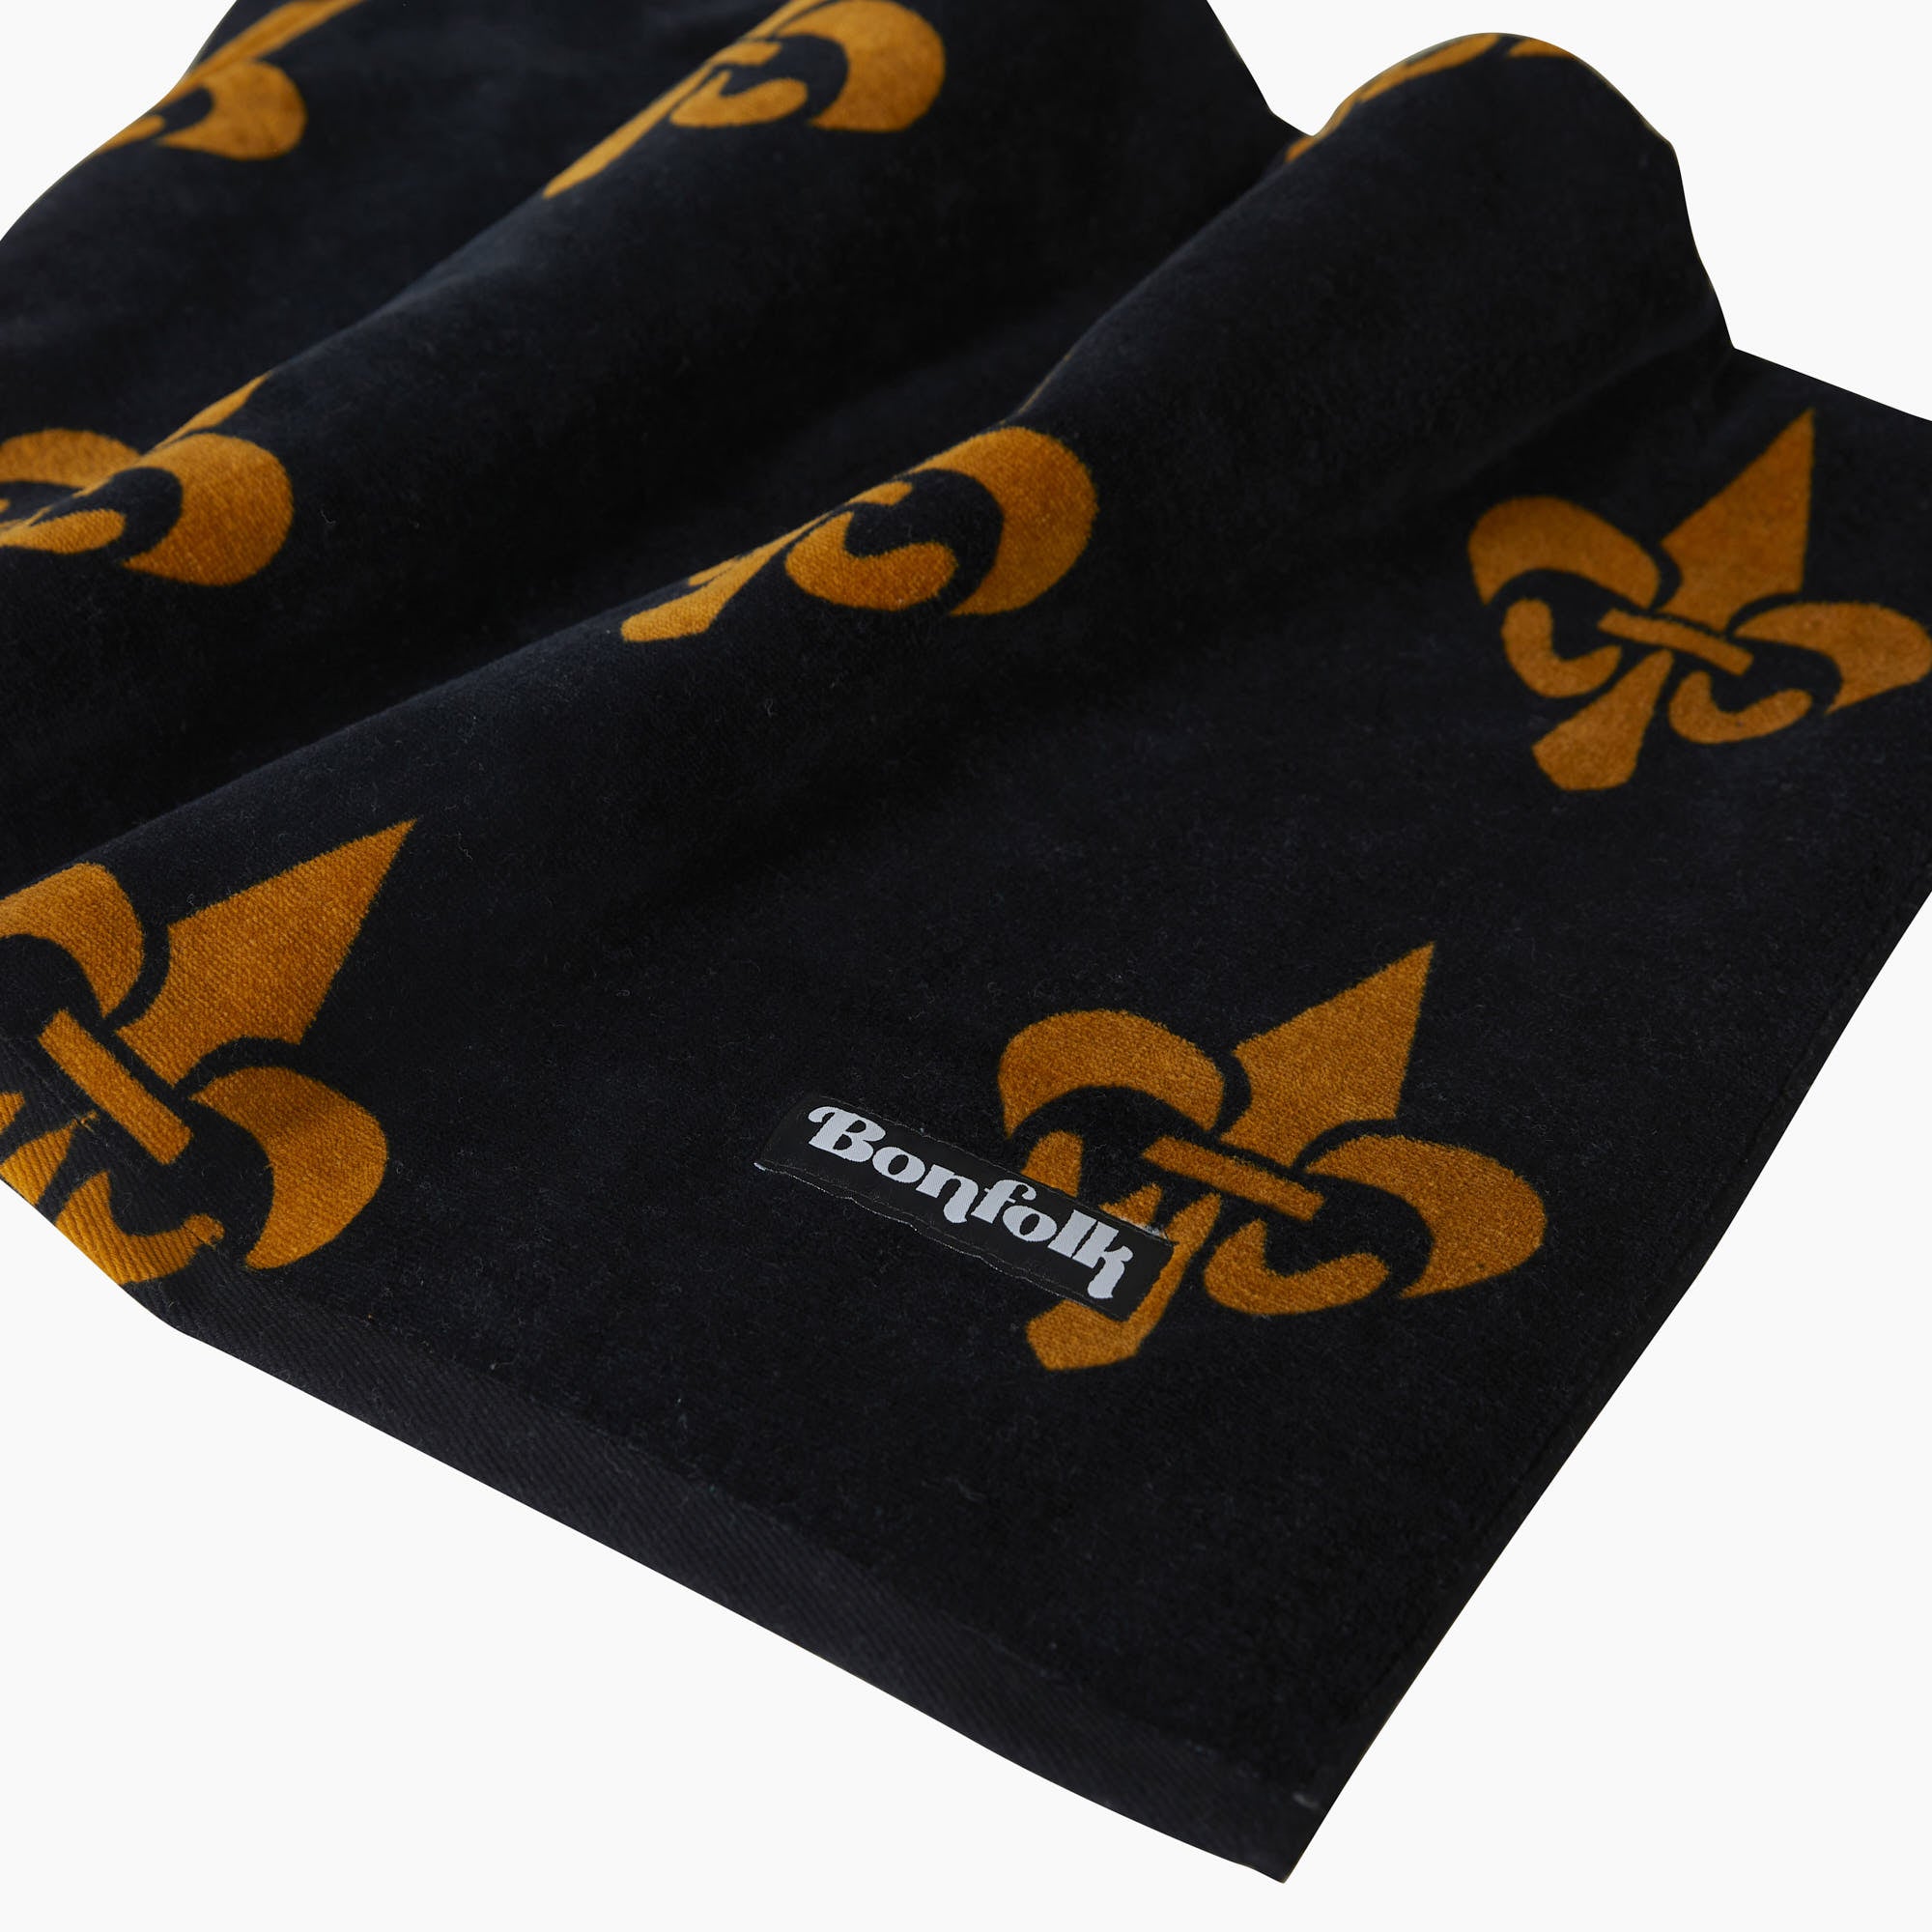 Bonfolk Black & Gold Towel